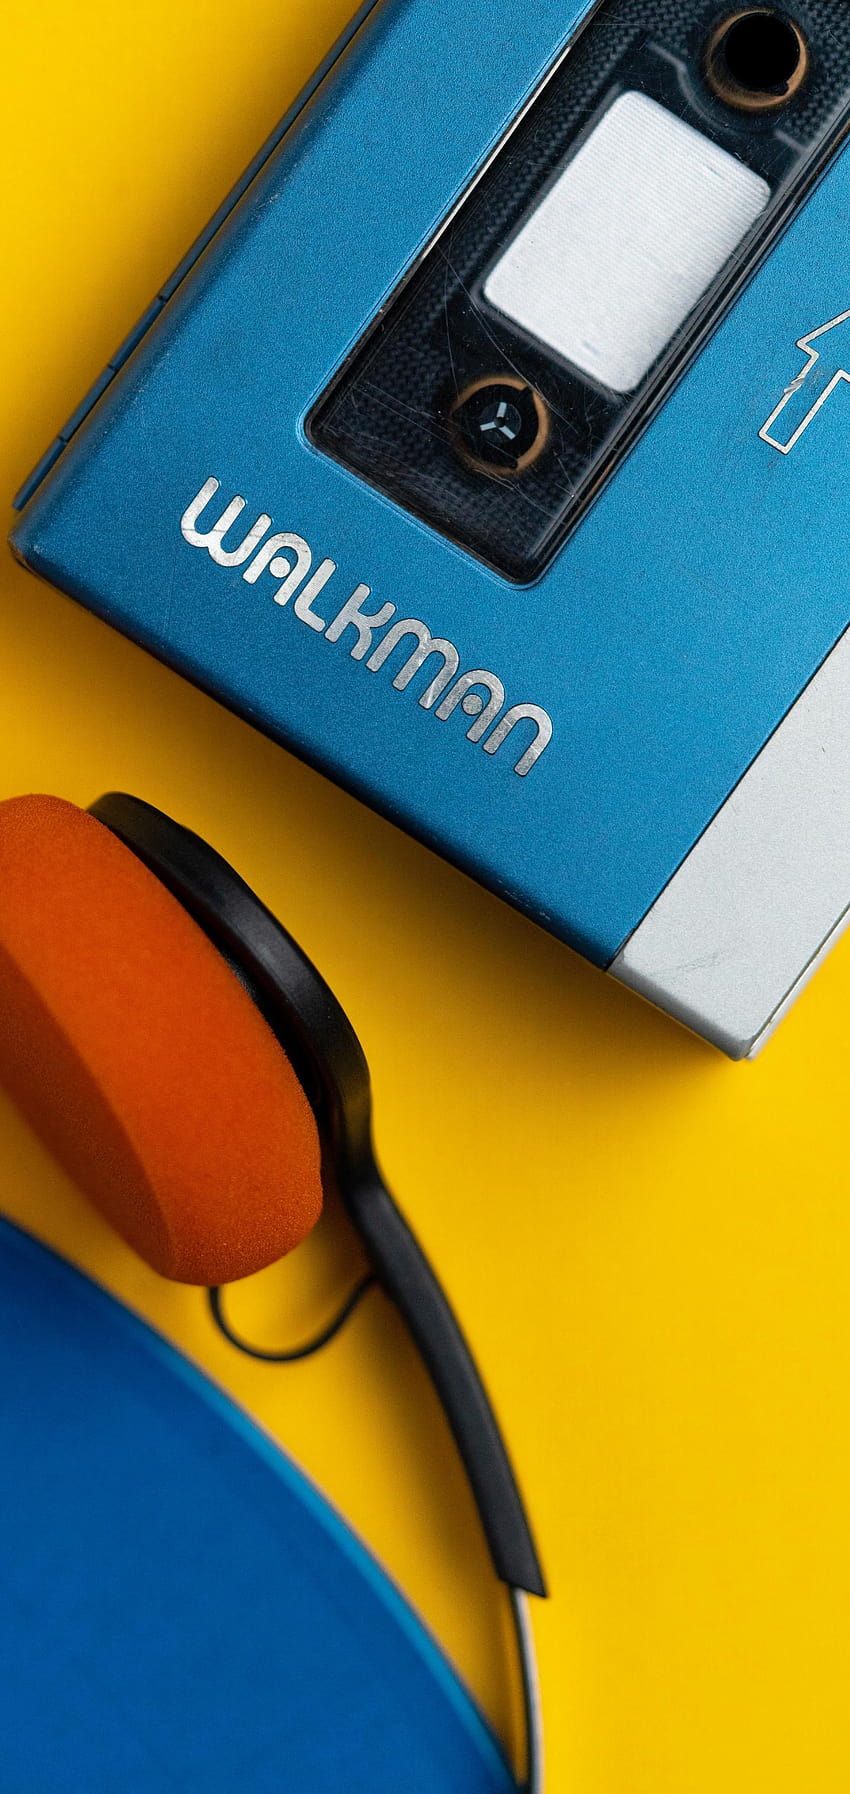 Sony Walkman de Jonathan Morrison, walkman android fondo de pantalla del teléfono